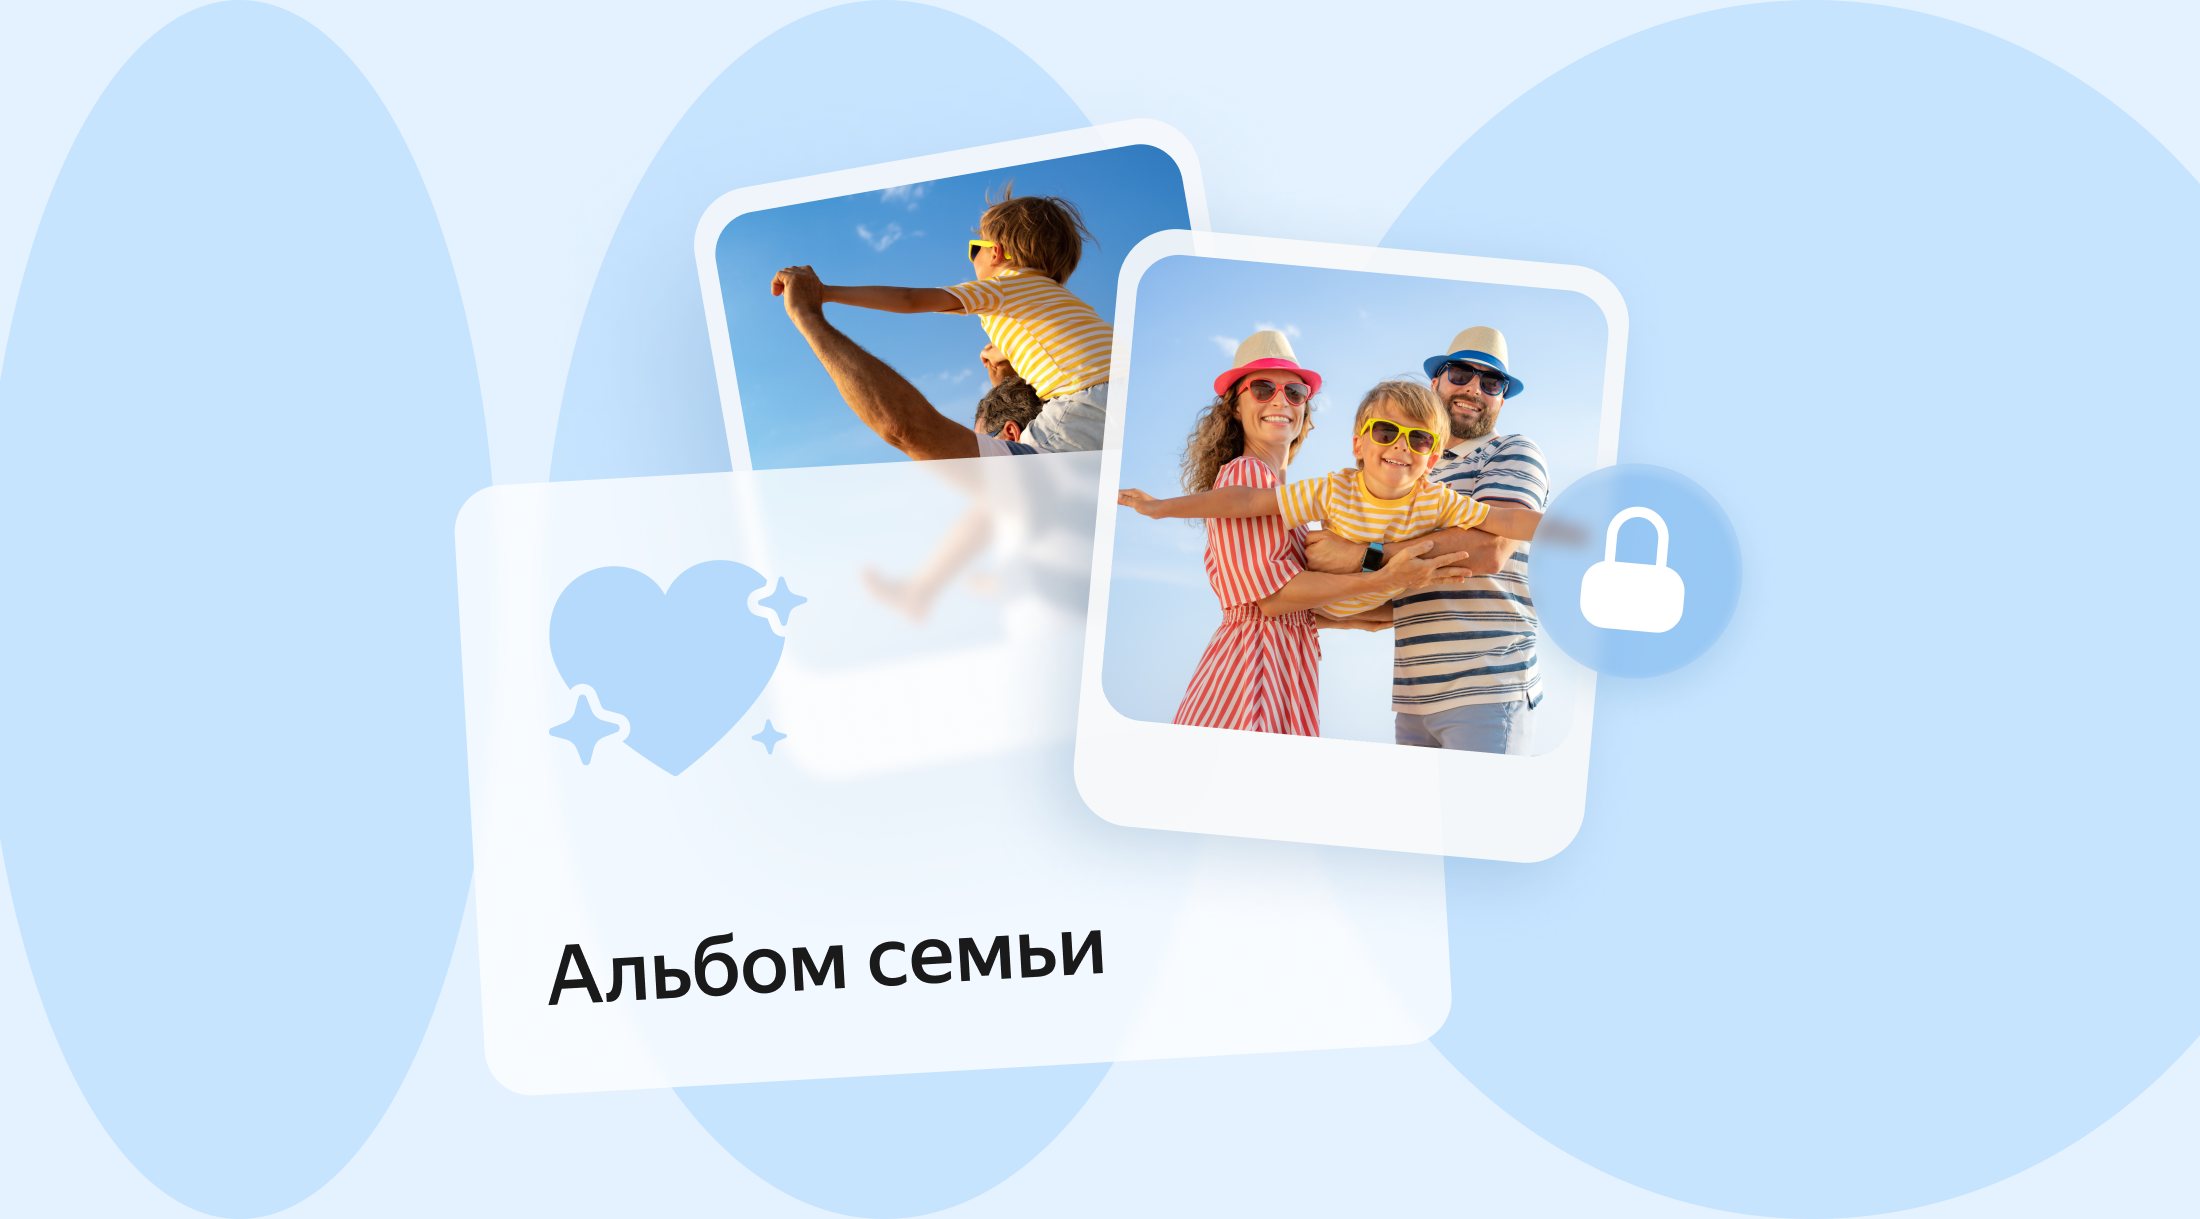 Яндекс 360 добавил на Диск семейный фотоальбом